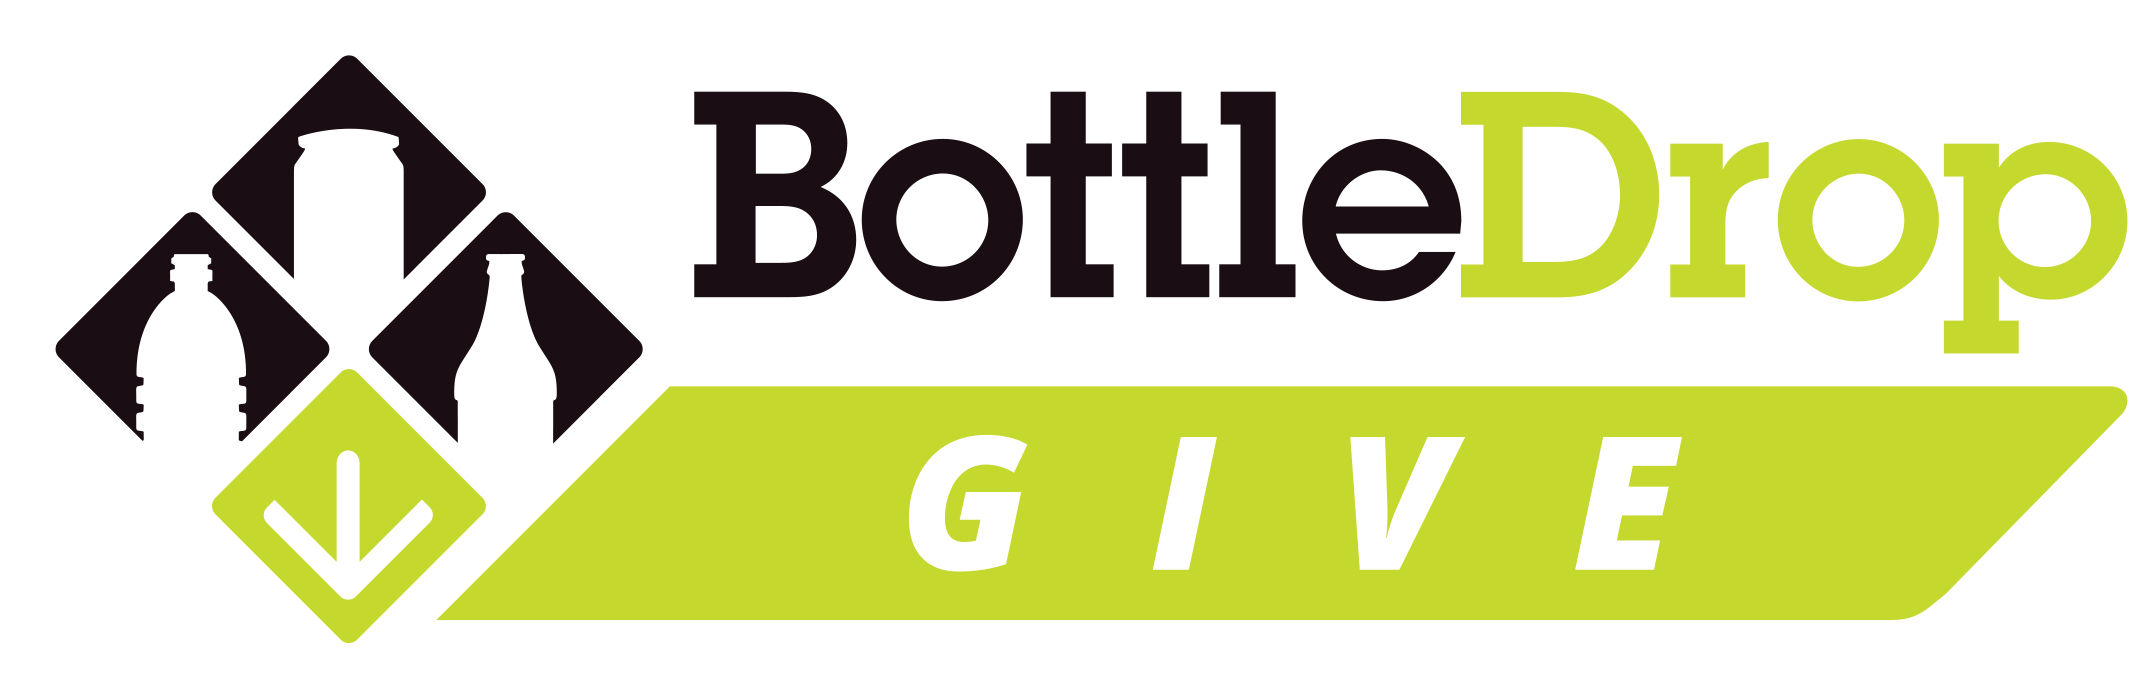 Logo for Bottle Drop Give program